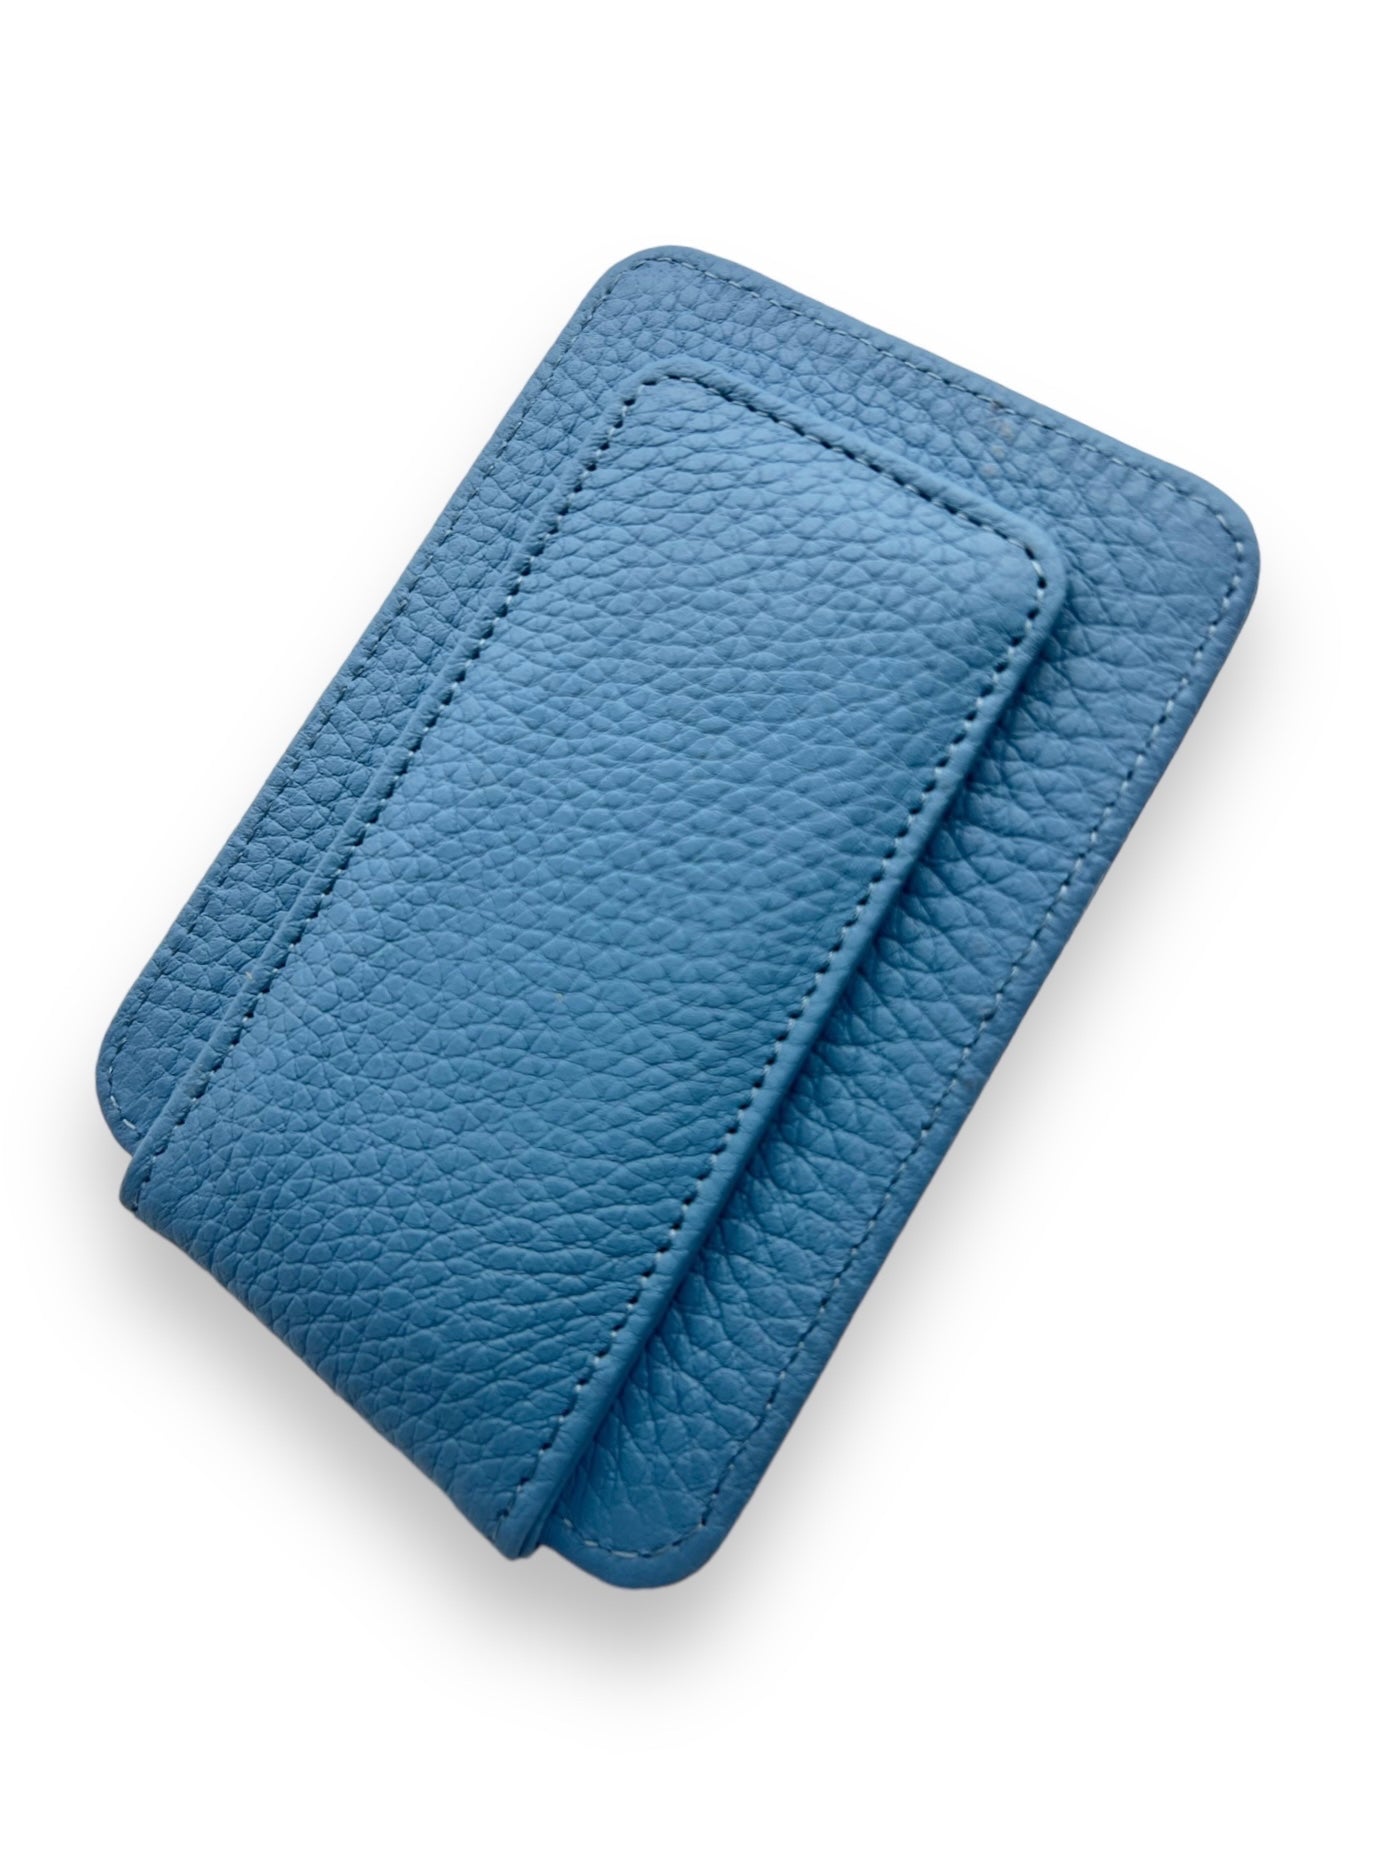 Magneta Wallet